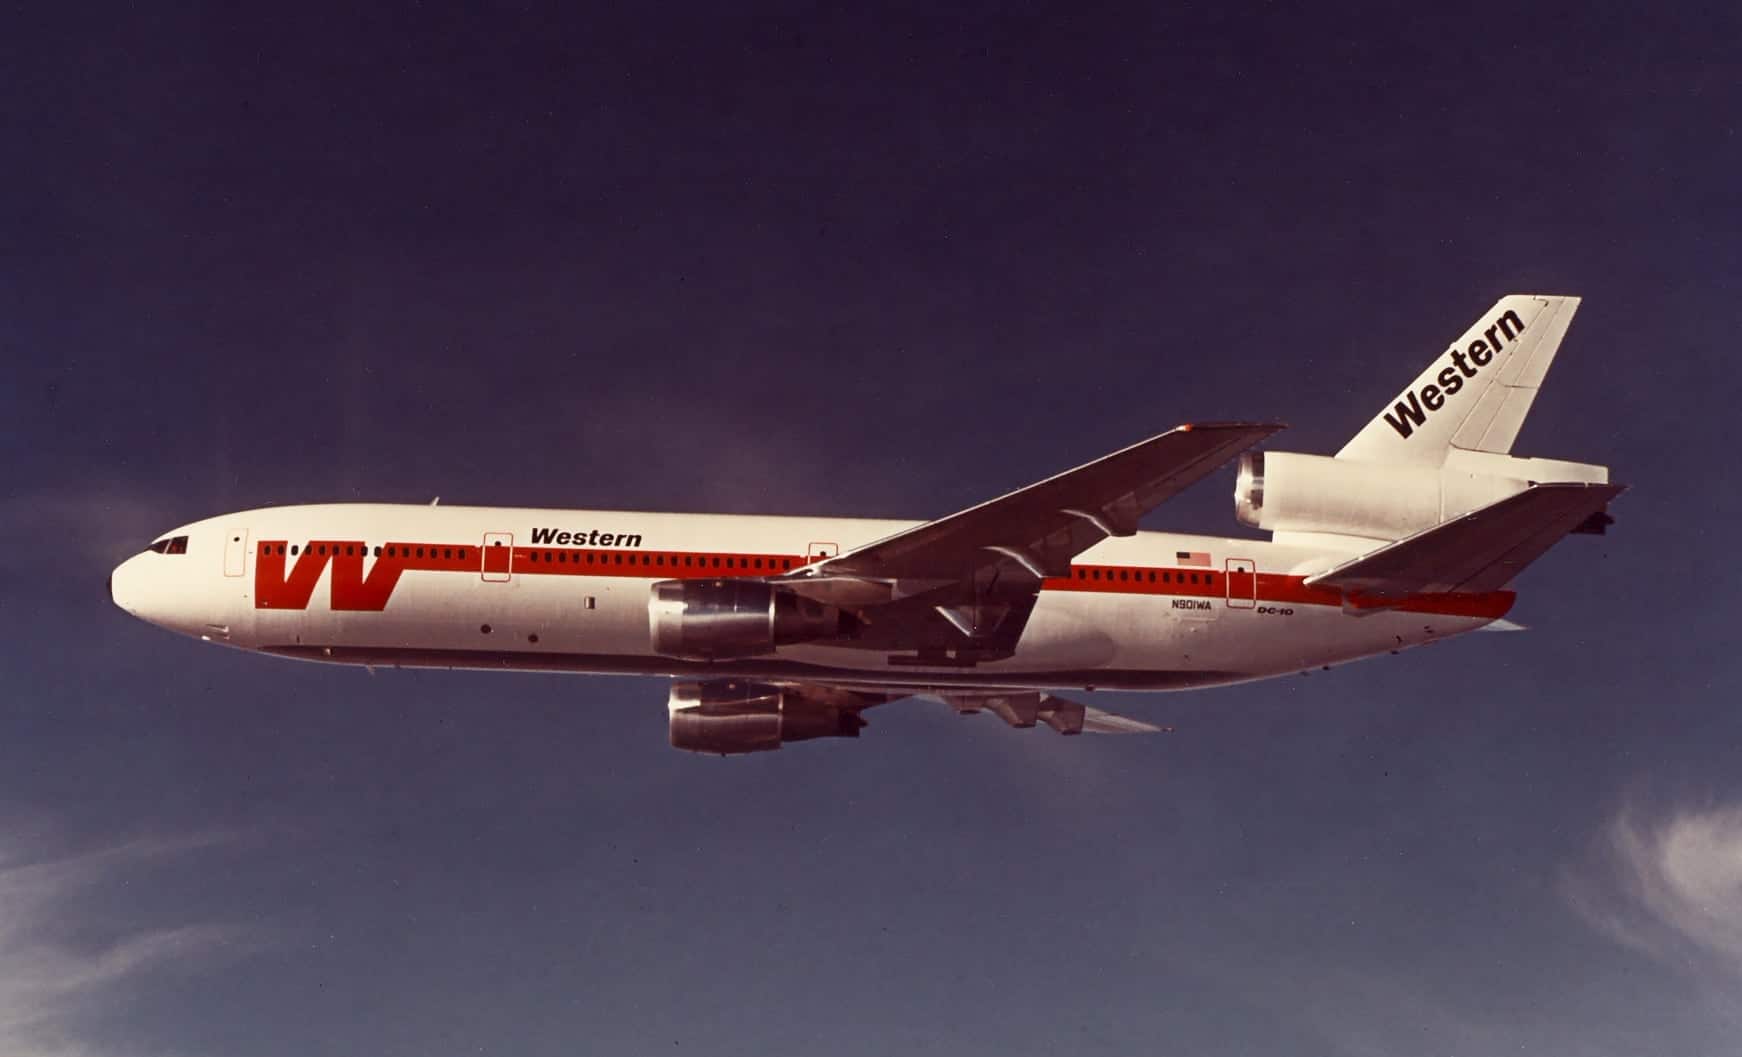 DC-10 in flight.